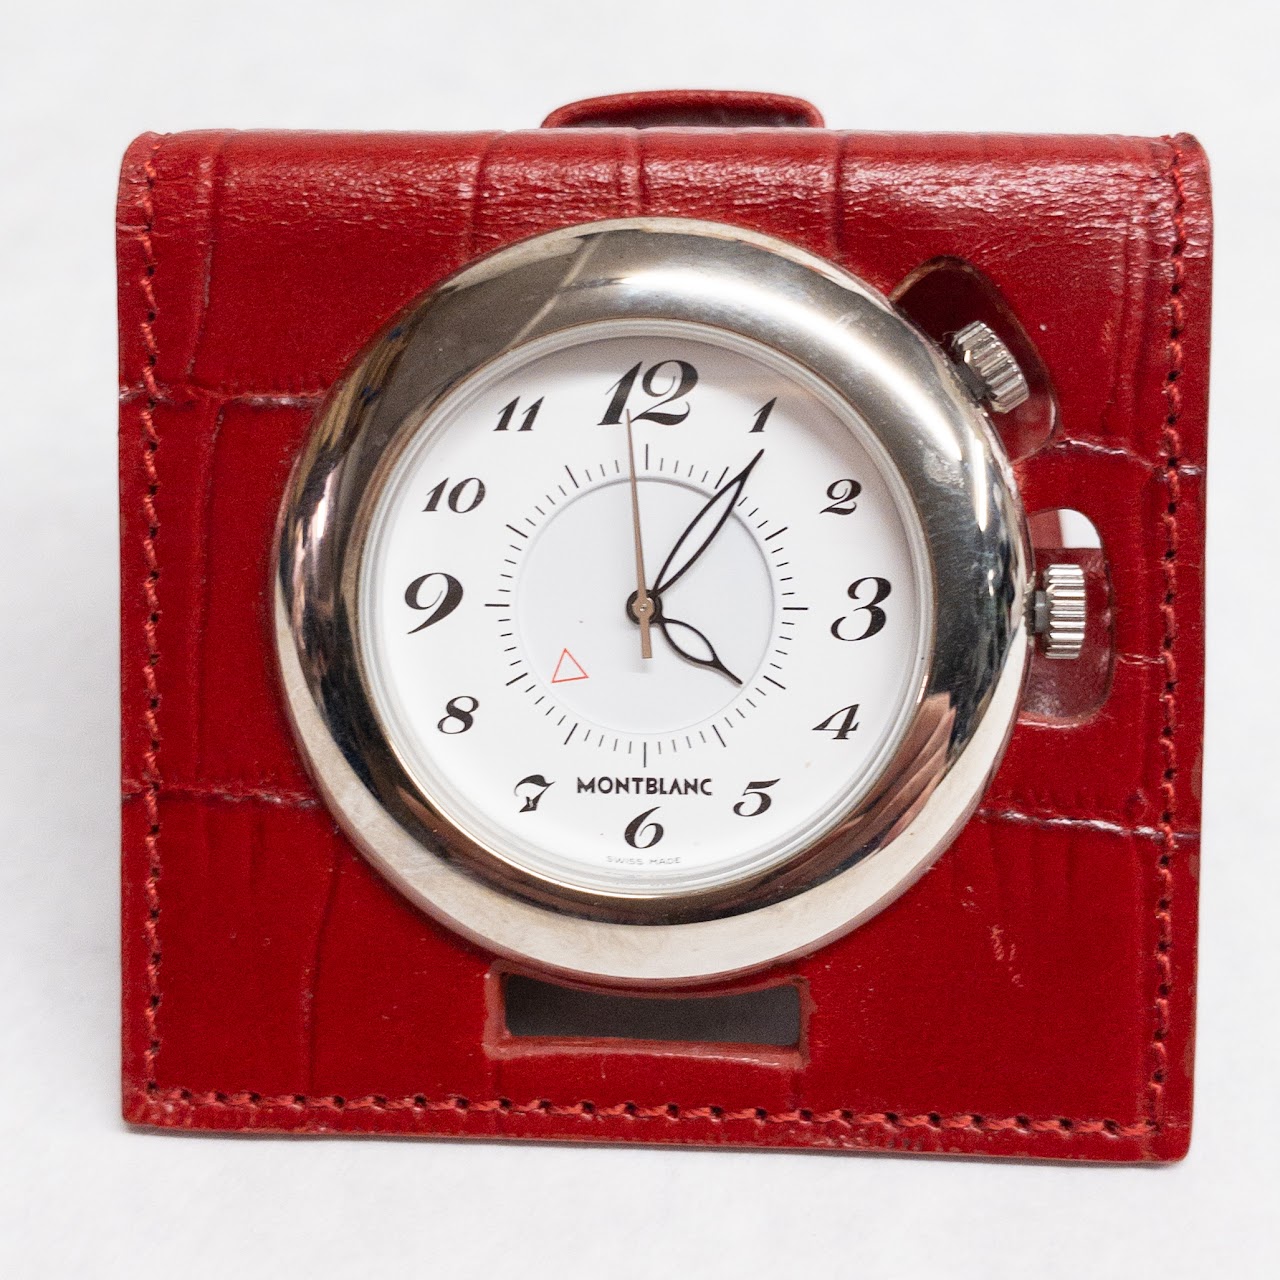 Montblanc Travel Alarm Clock